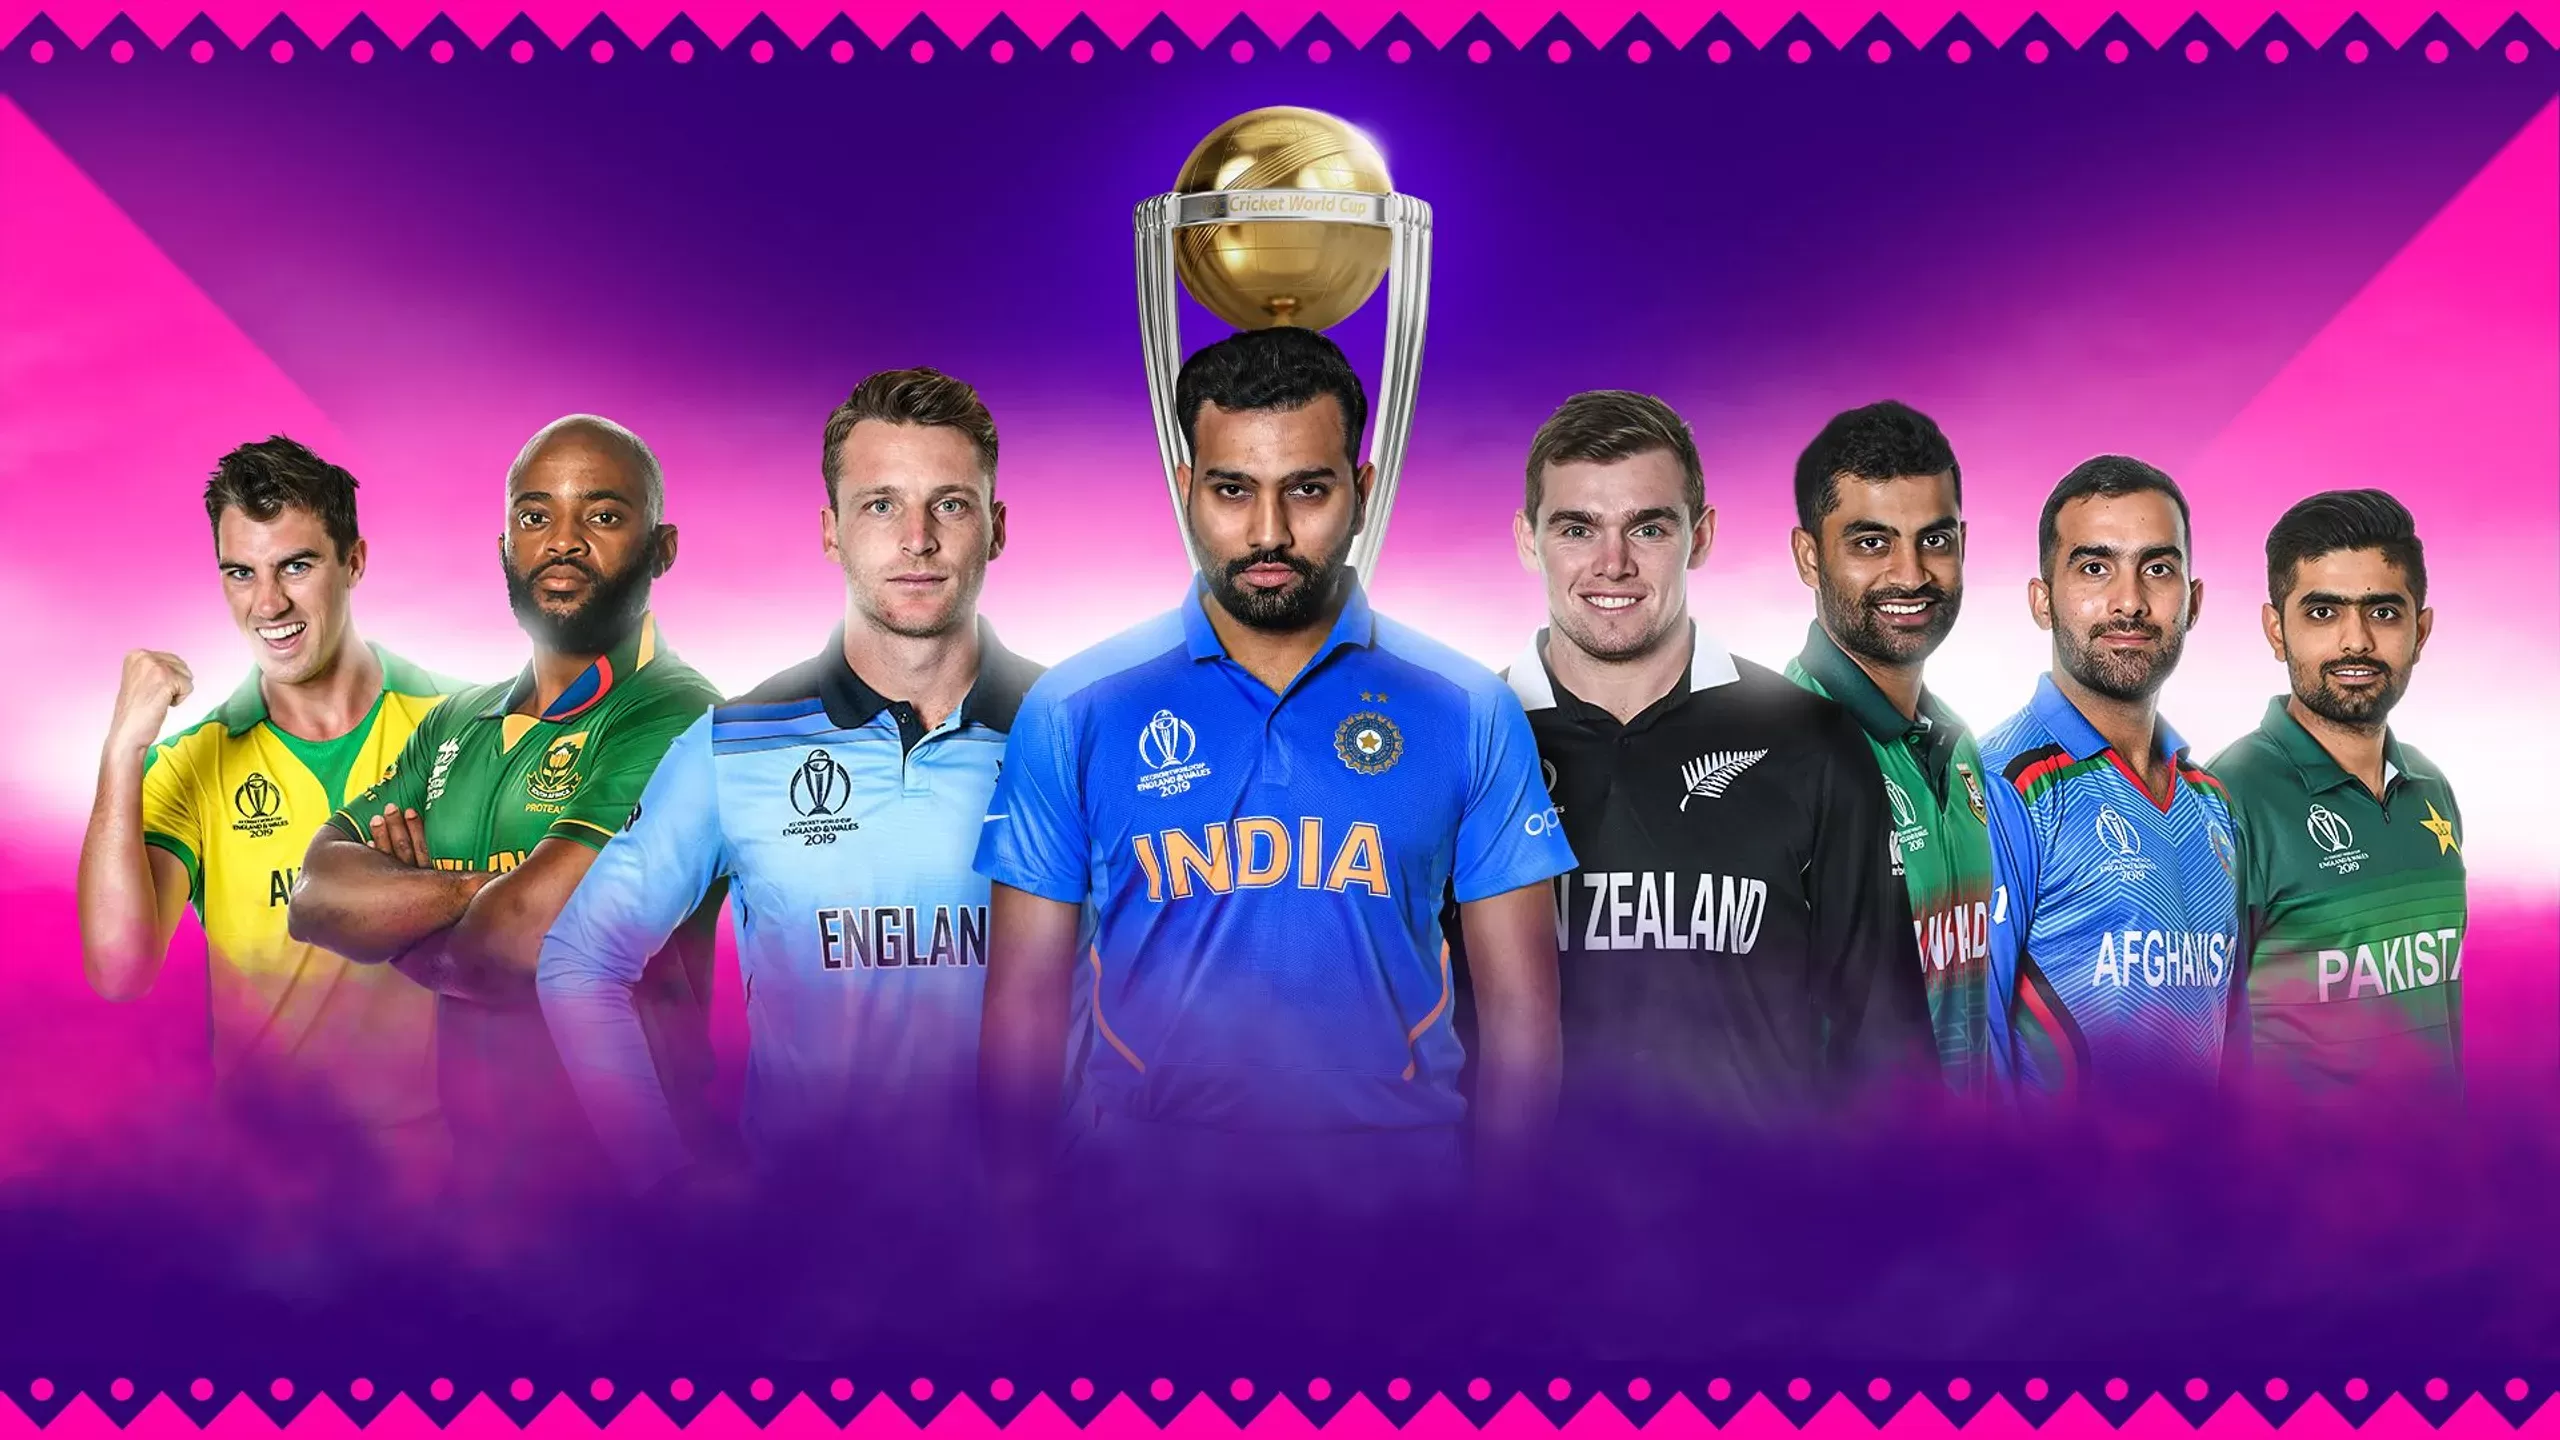 ICC announces dates for ICC World Cup Trophy tour across Pakistan